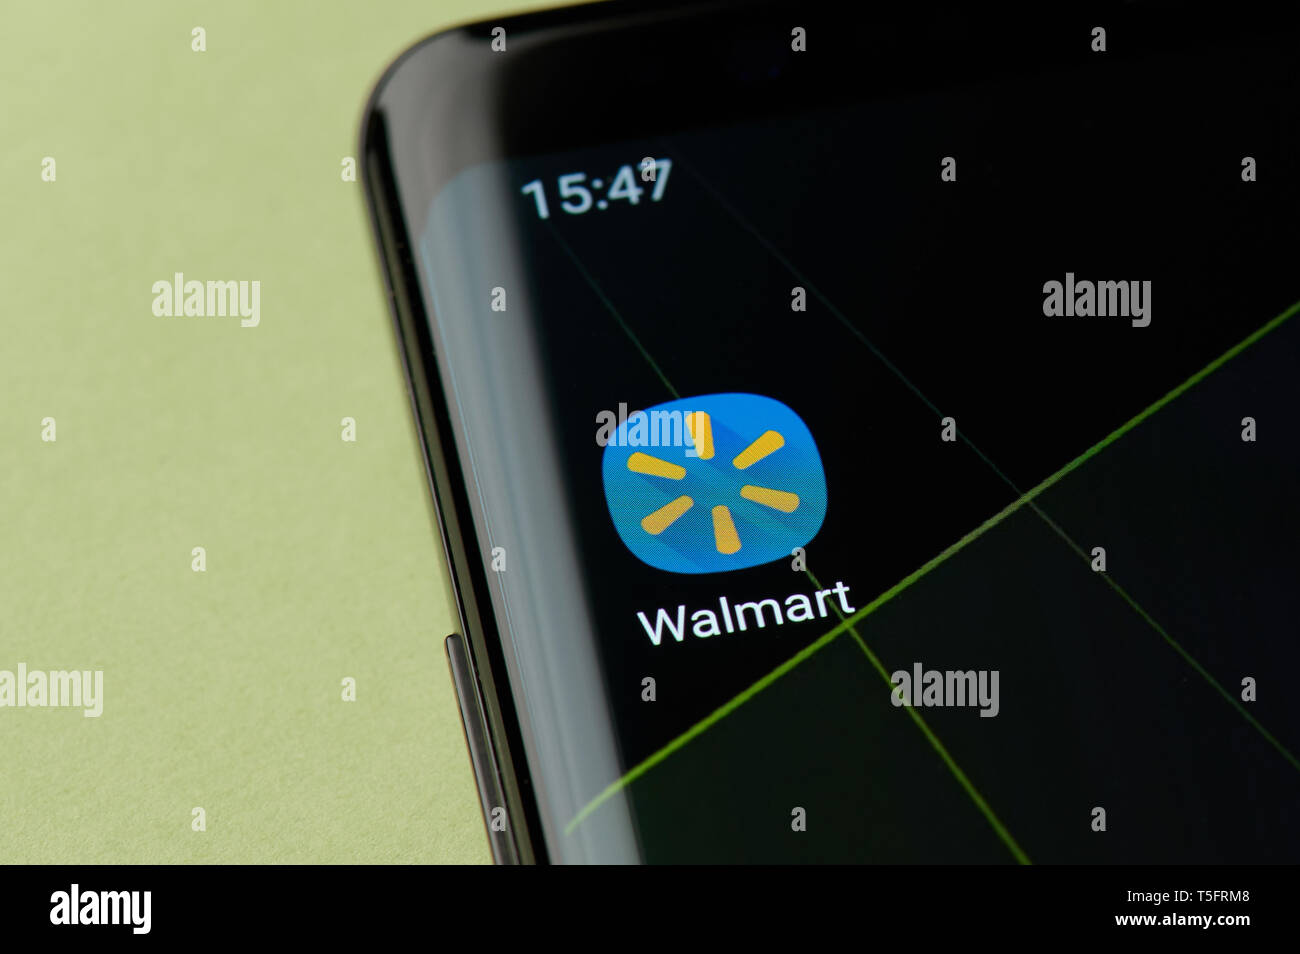 New York, USA - 22 Avril 2019 : l'icône boutique Wallmart macro-vision sur l'écran du smartphone desktop Banque D'Images